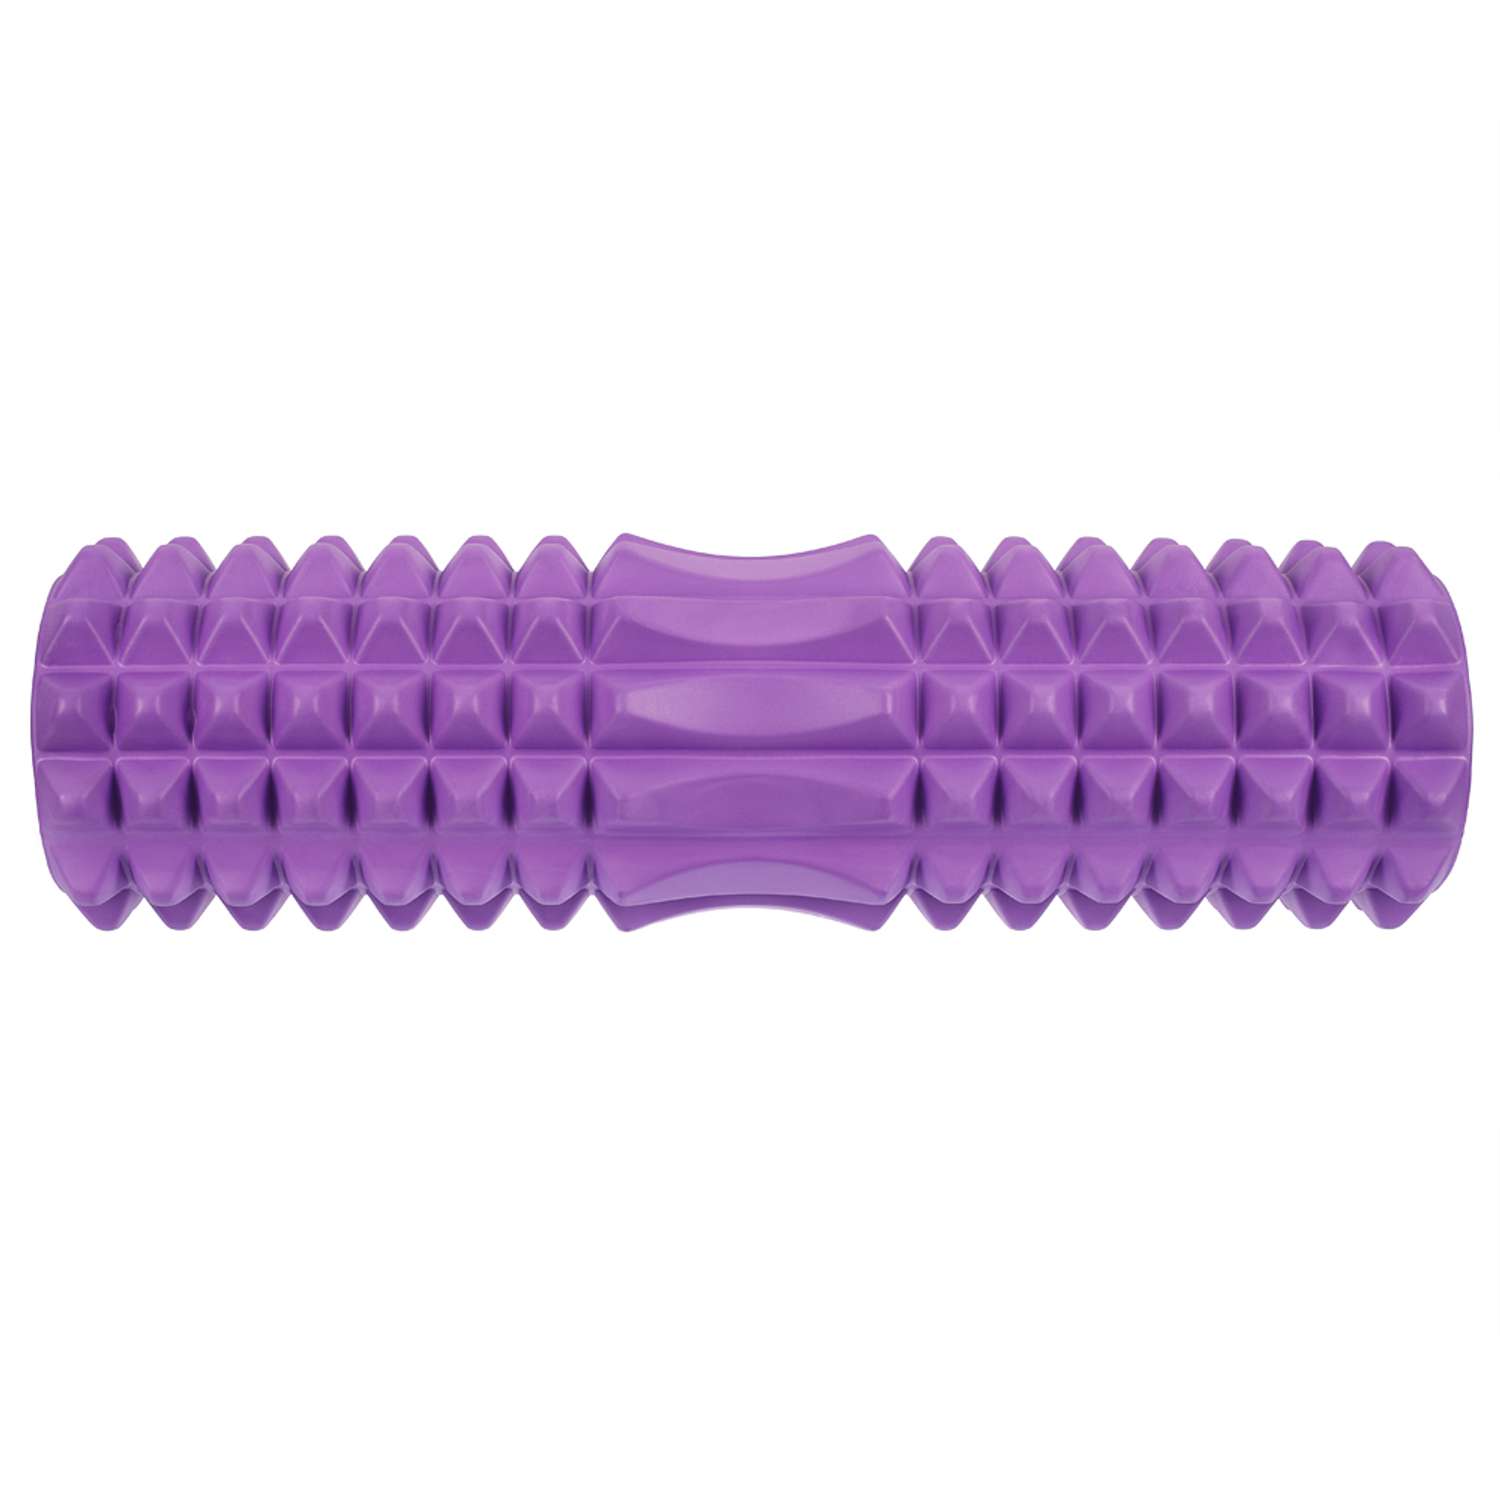 Комплект для фитнеса STRONG BODY 3 предмета: ролик массажный 45 см. ручной массажер и МФР мяч - фото 4